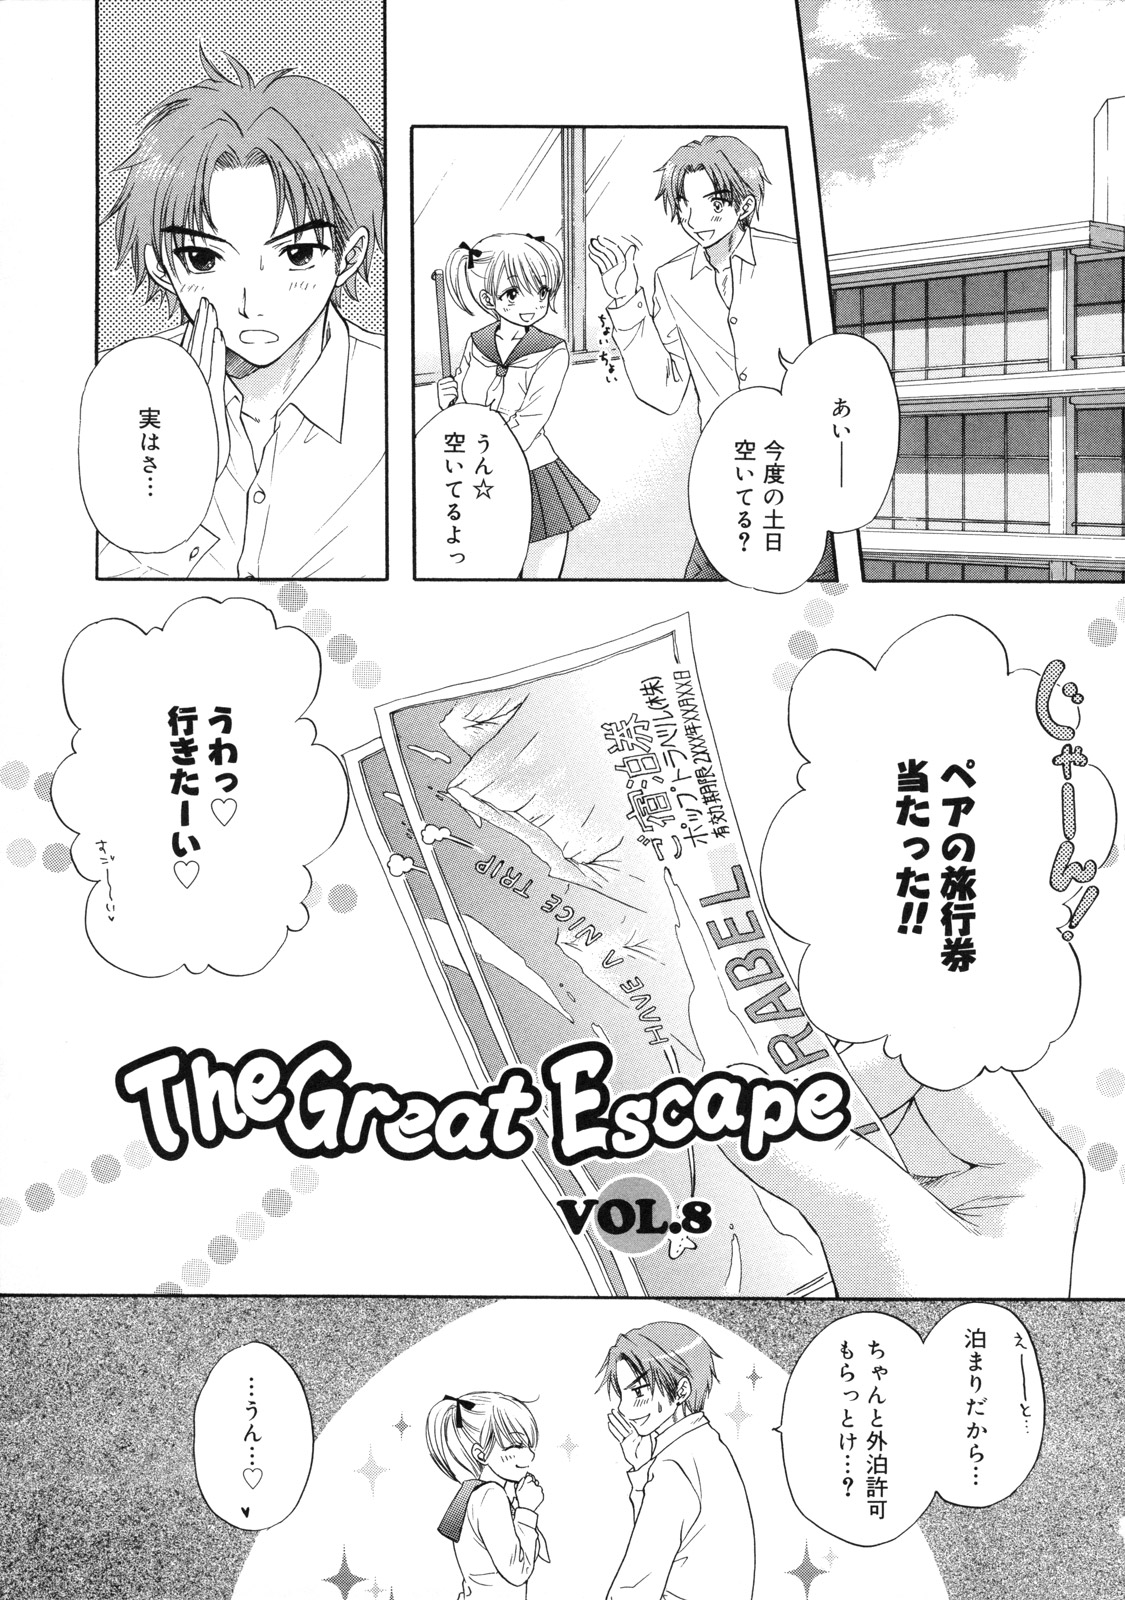 [尾崎未来] The Great Escape 2 初回限定版